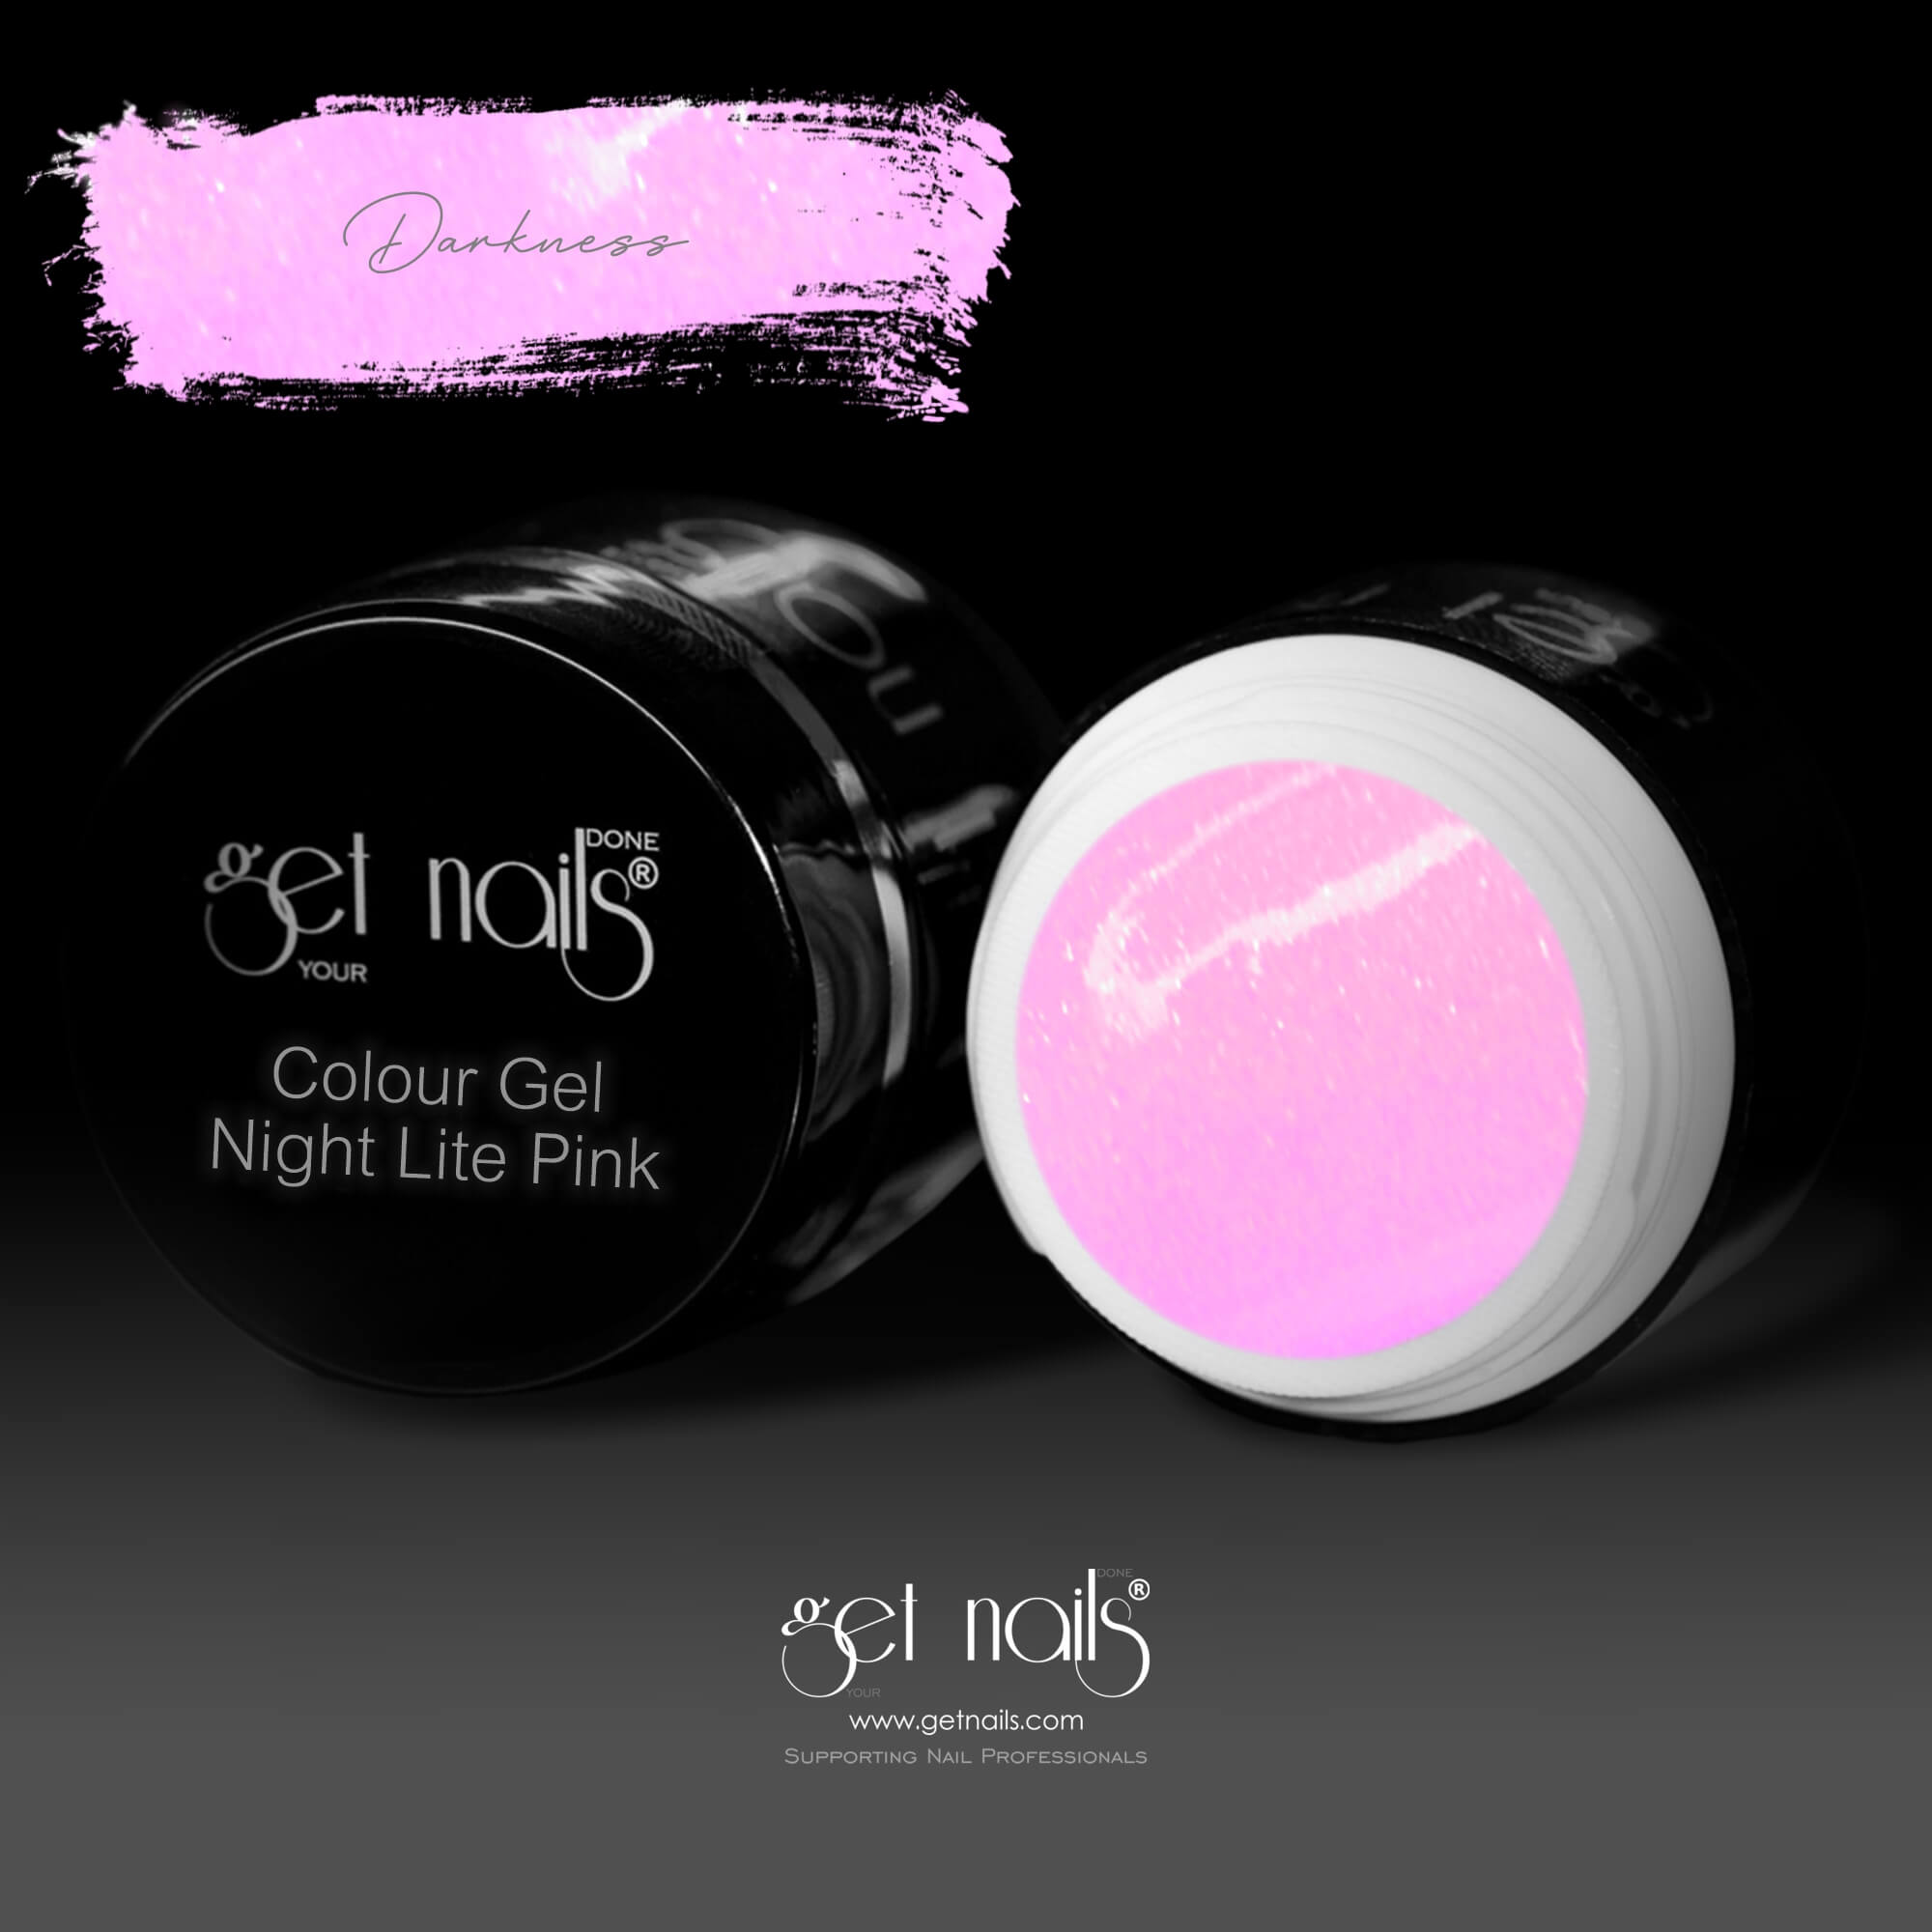 Get Nails Austria - Night Lite Colour Gel Pink 5g darkness